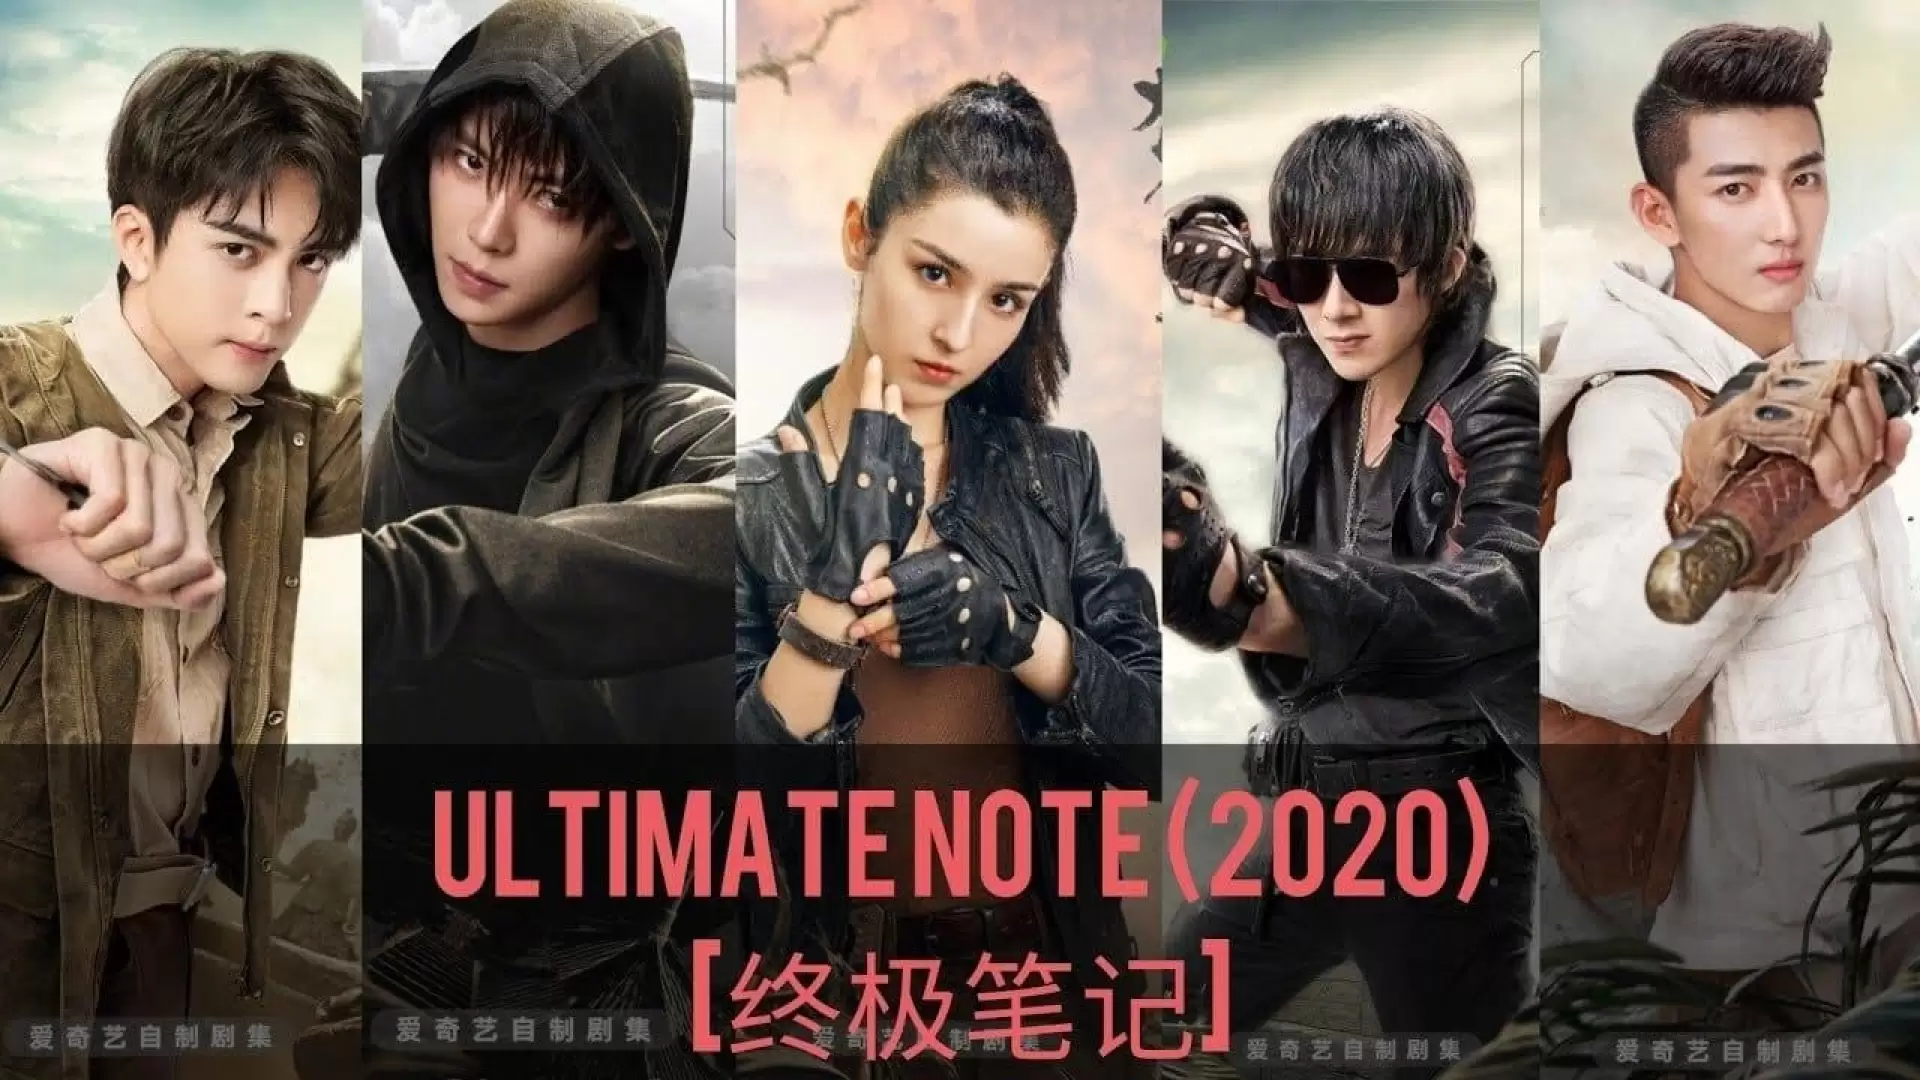 دانلود سریال Ultimate Note 2020 (یادداشت نهایی) با زیرنویس فارسی